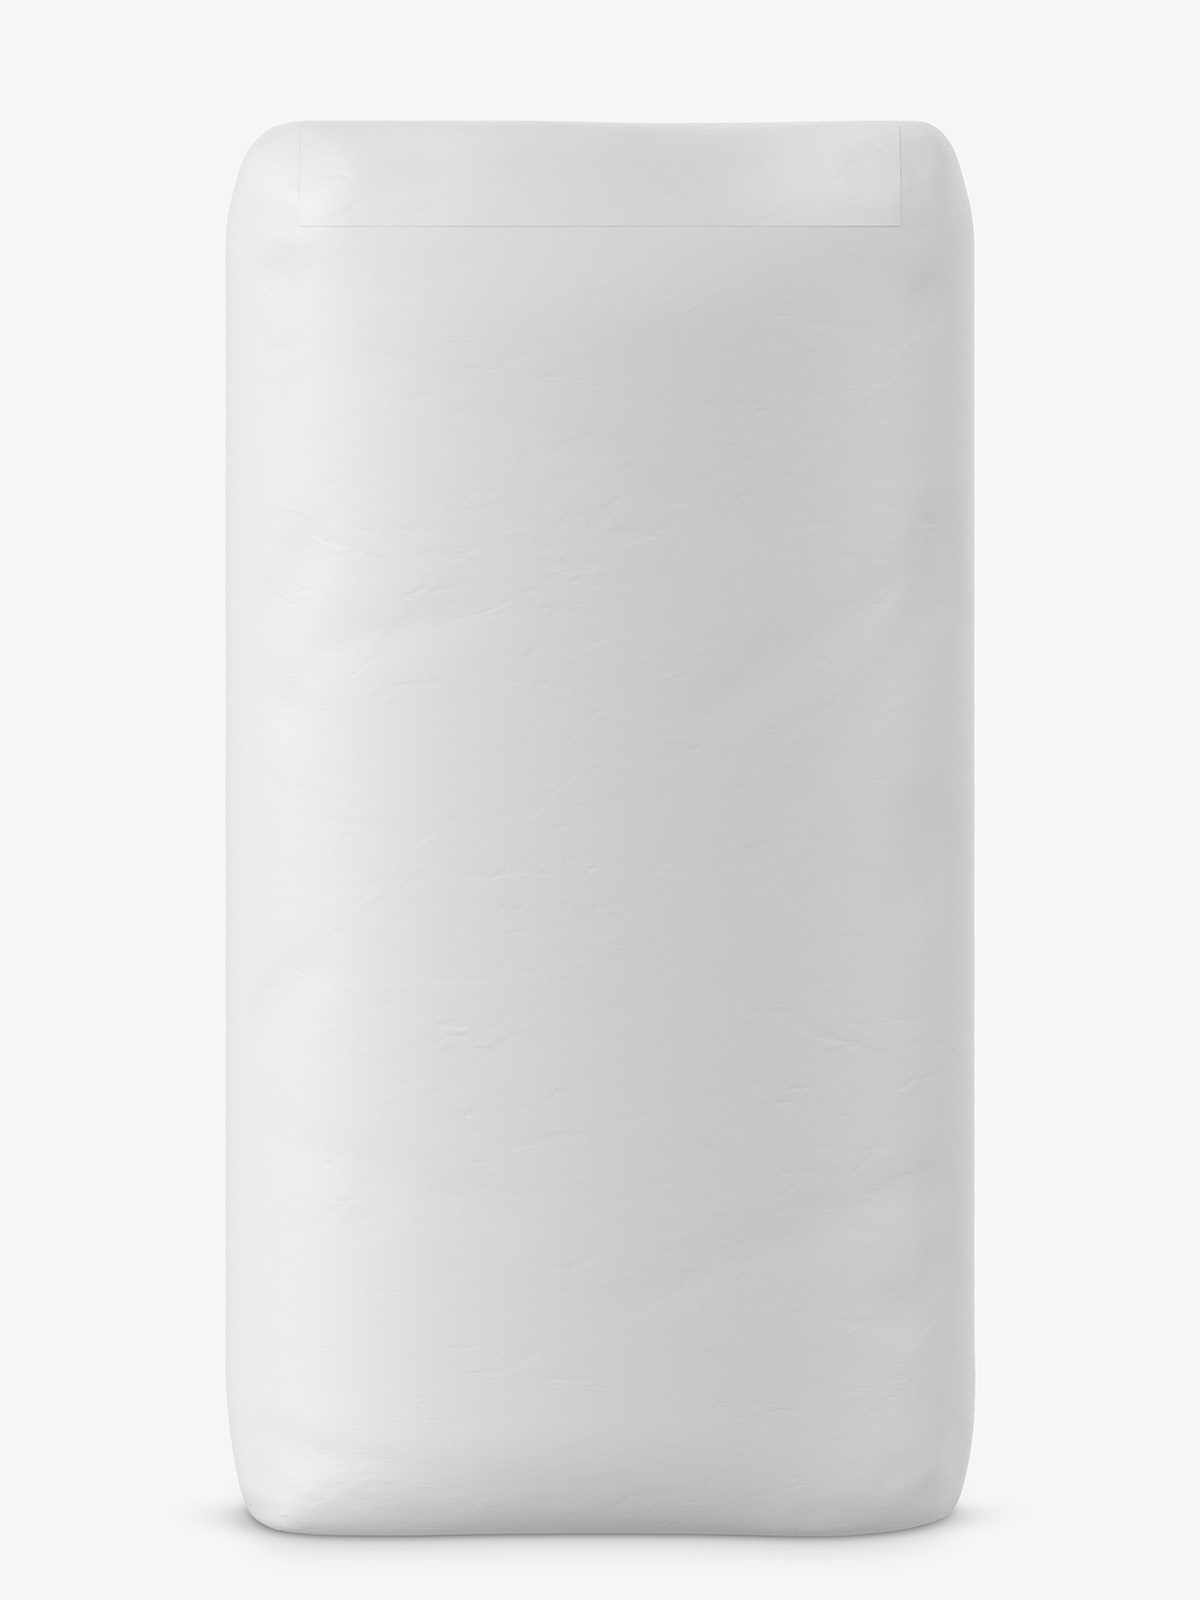 Download Free Mockups Matte Paper Cement Bag Psd : Kraft Paper Bag Mockup - Halfside View in Bag & Sack ...